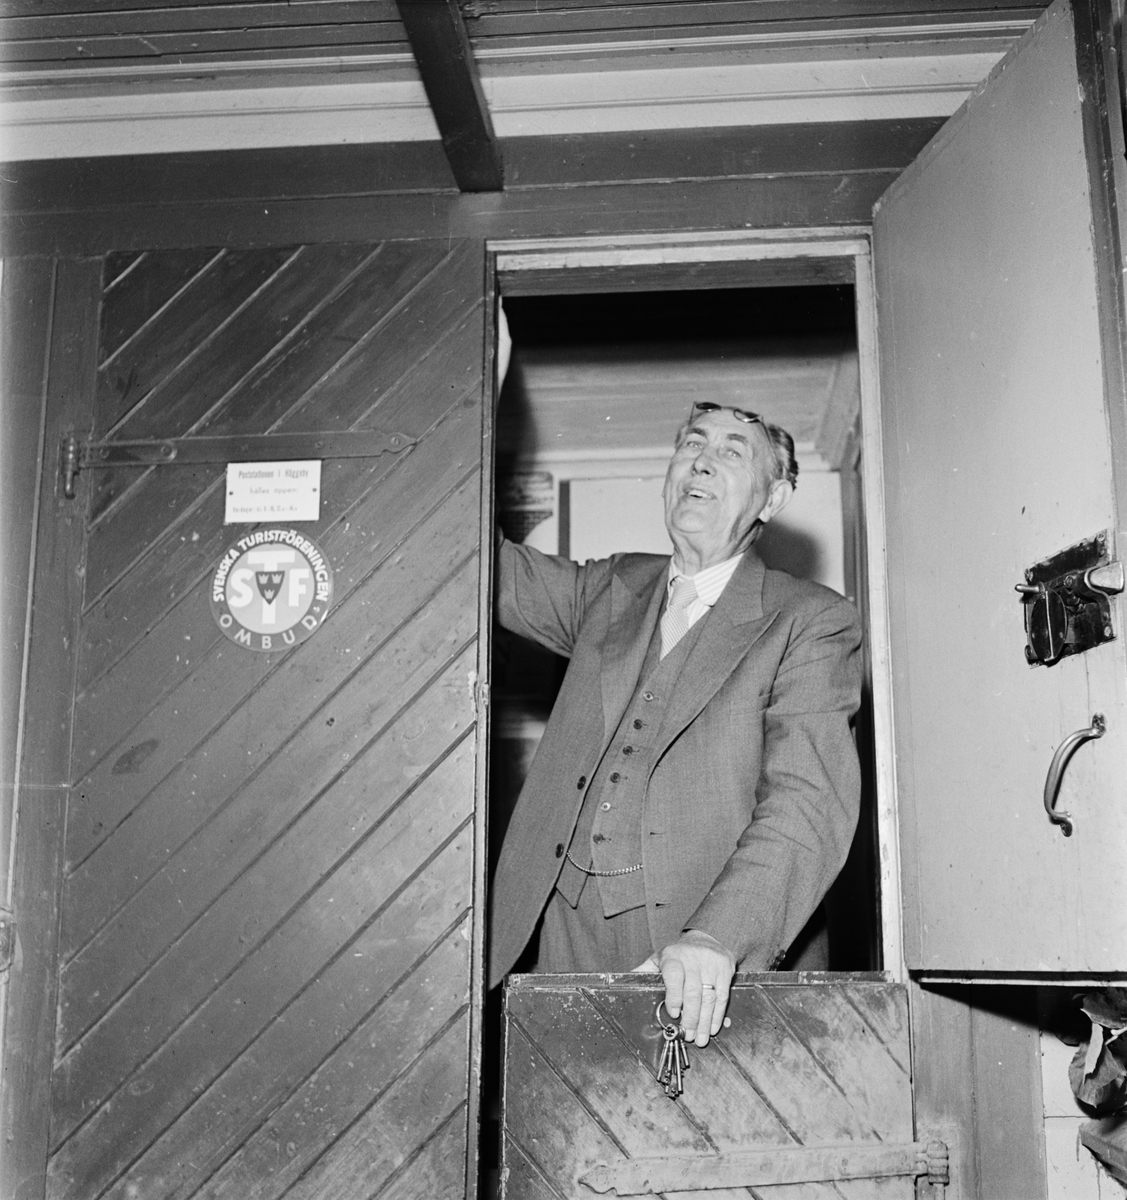 Postmästare Kjellbom - Häggeby postkontor läggs ned, Uppland 1954